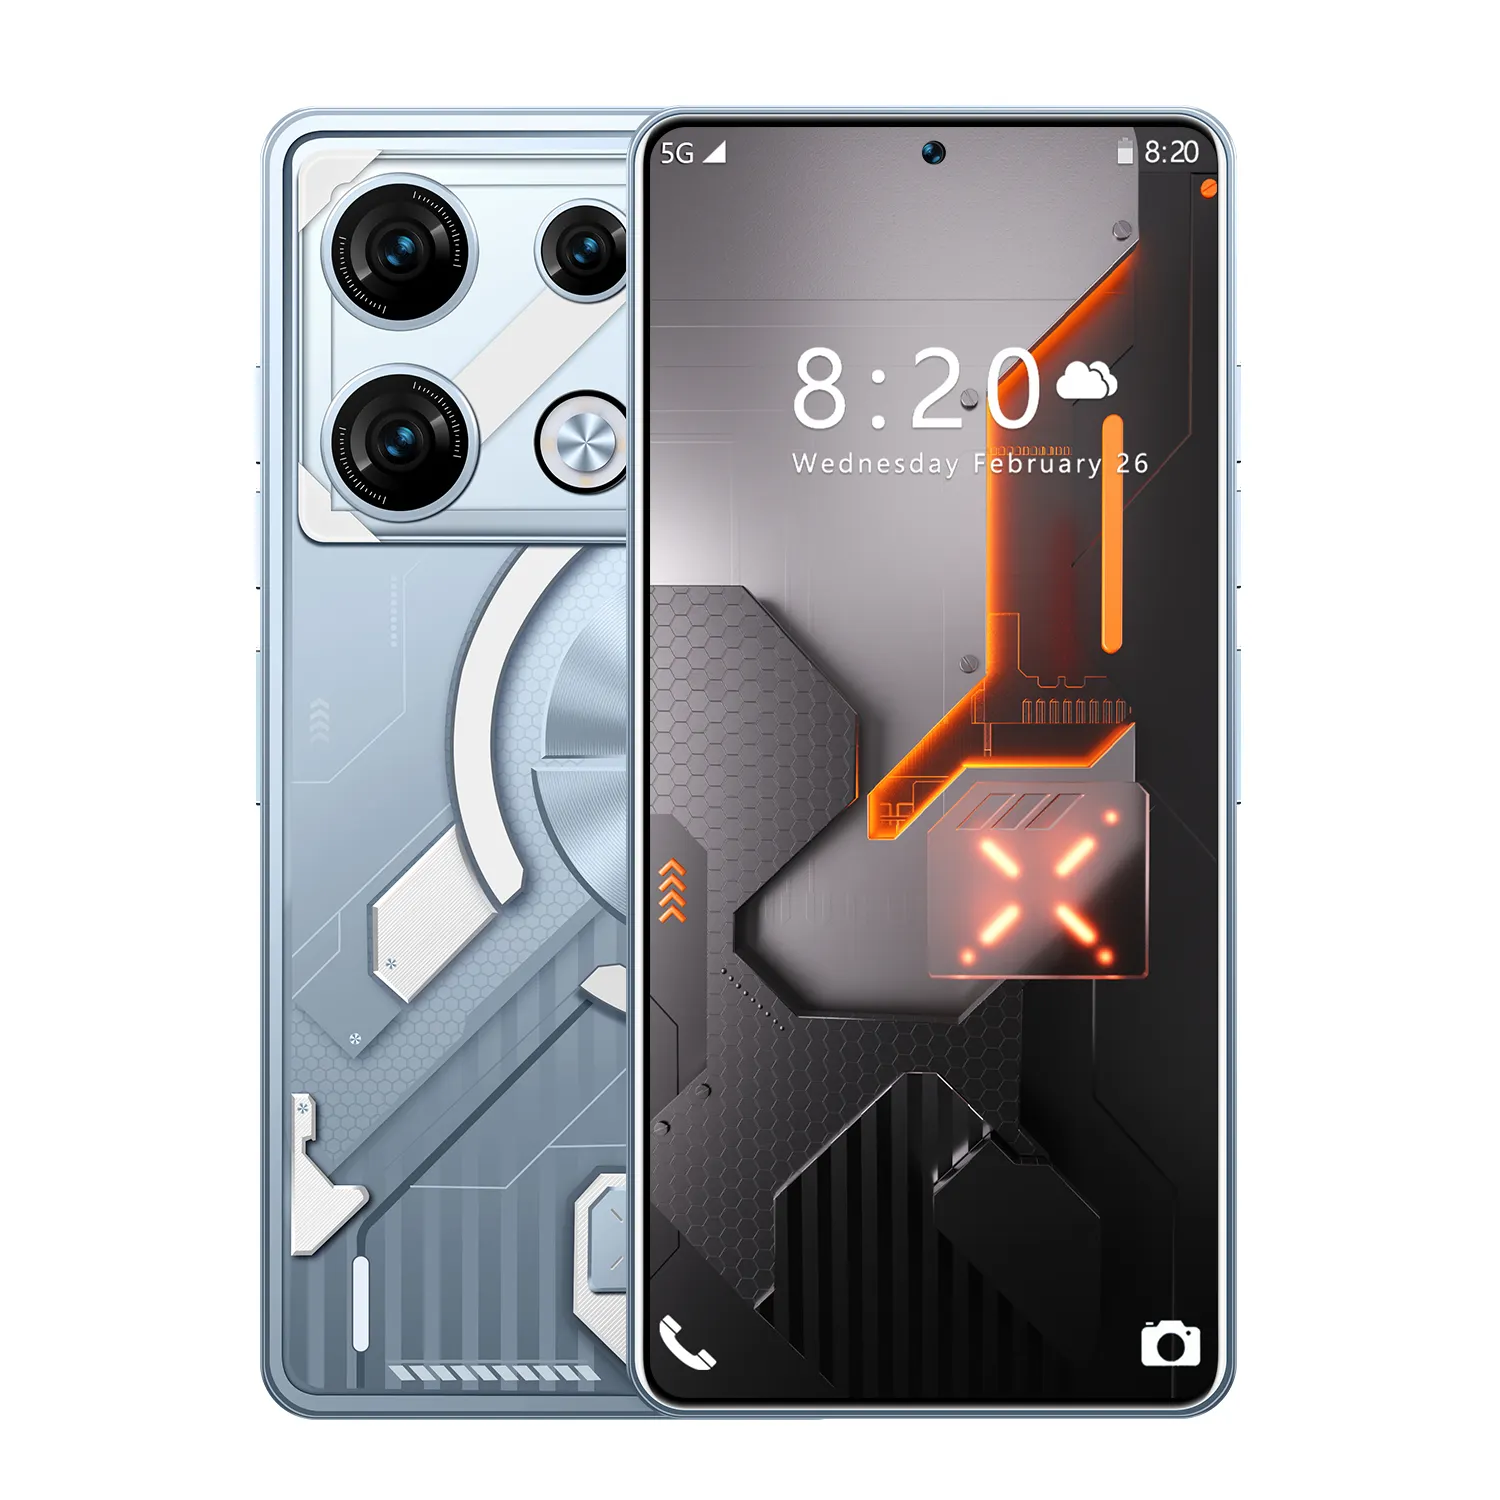 هاتف ذكي GT10 Pro أصلي بنظام أندرويد 10 بشاشة 6.54 بوصة عالية الدقة LCD 3 جيجابايت + 32 جيجابايت بطارية 4000 مللي أمبير في الساعة وكاميرا 5 ميجابكسل + 13 ميجابكسل مزدوج الشريحة فتح القفل بالتعرف على الوجه هاتف محمول للألعاب